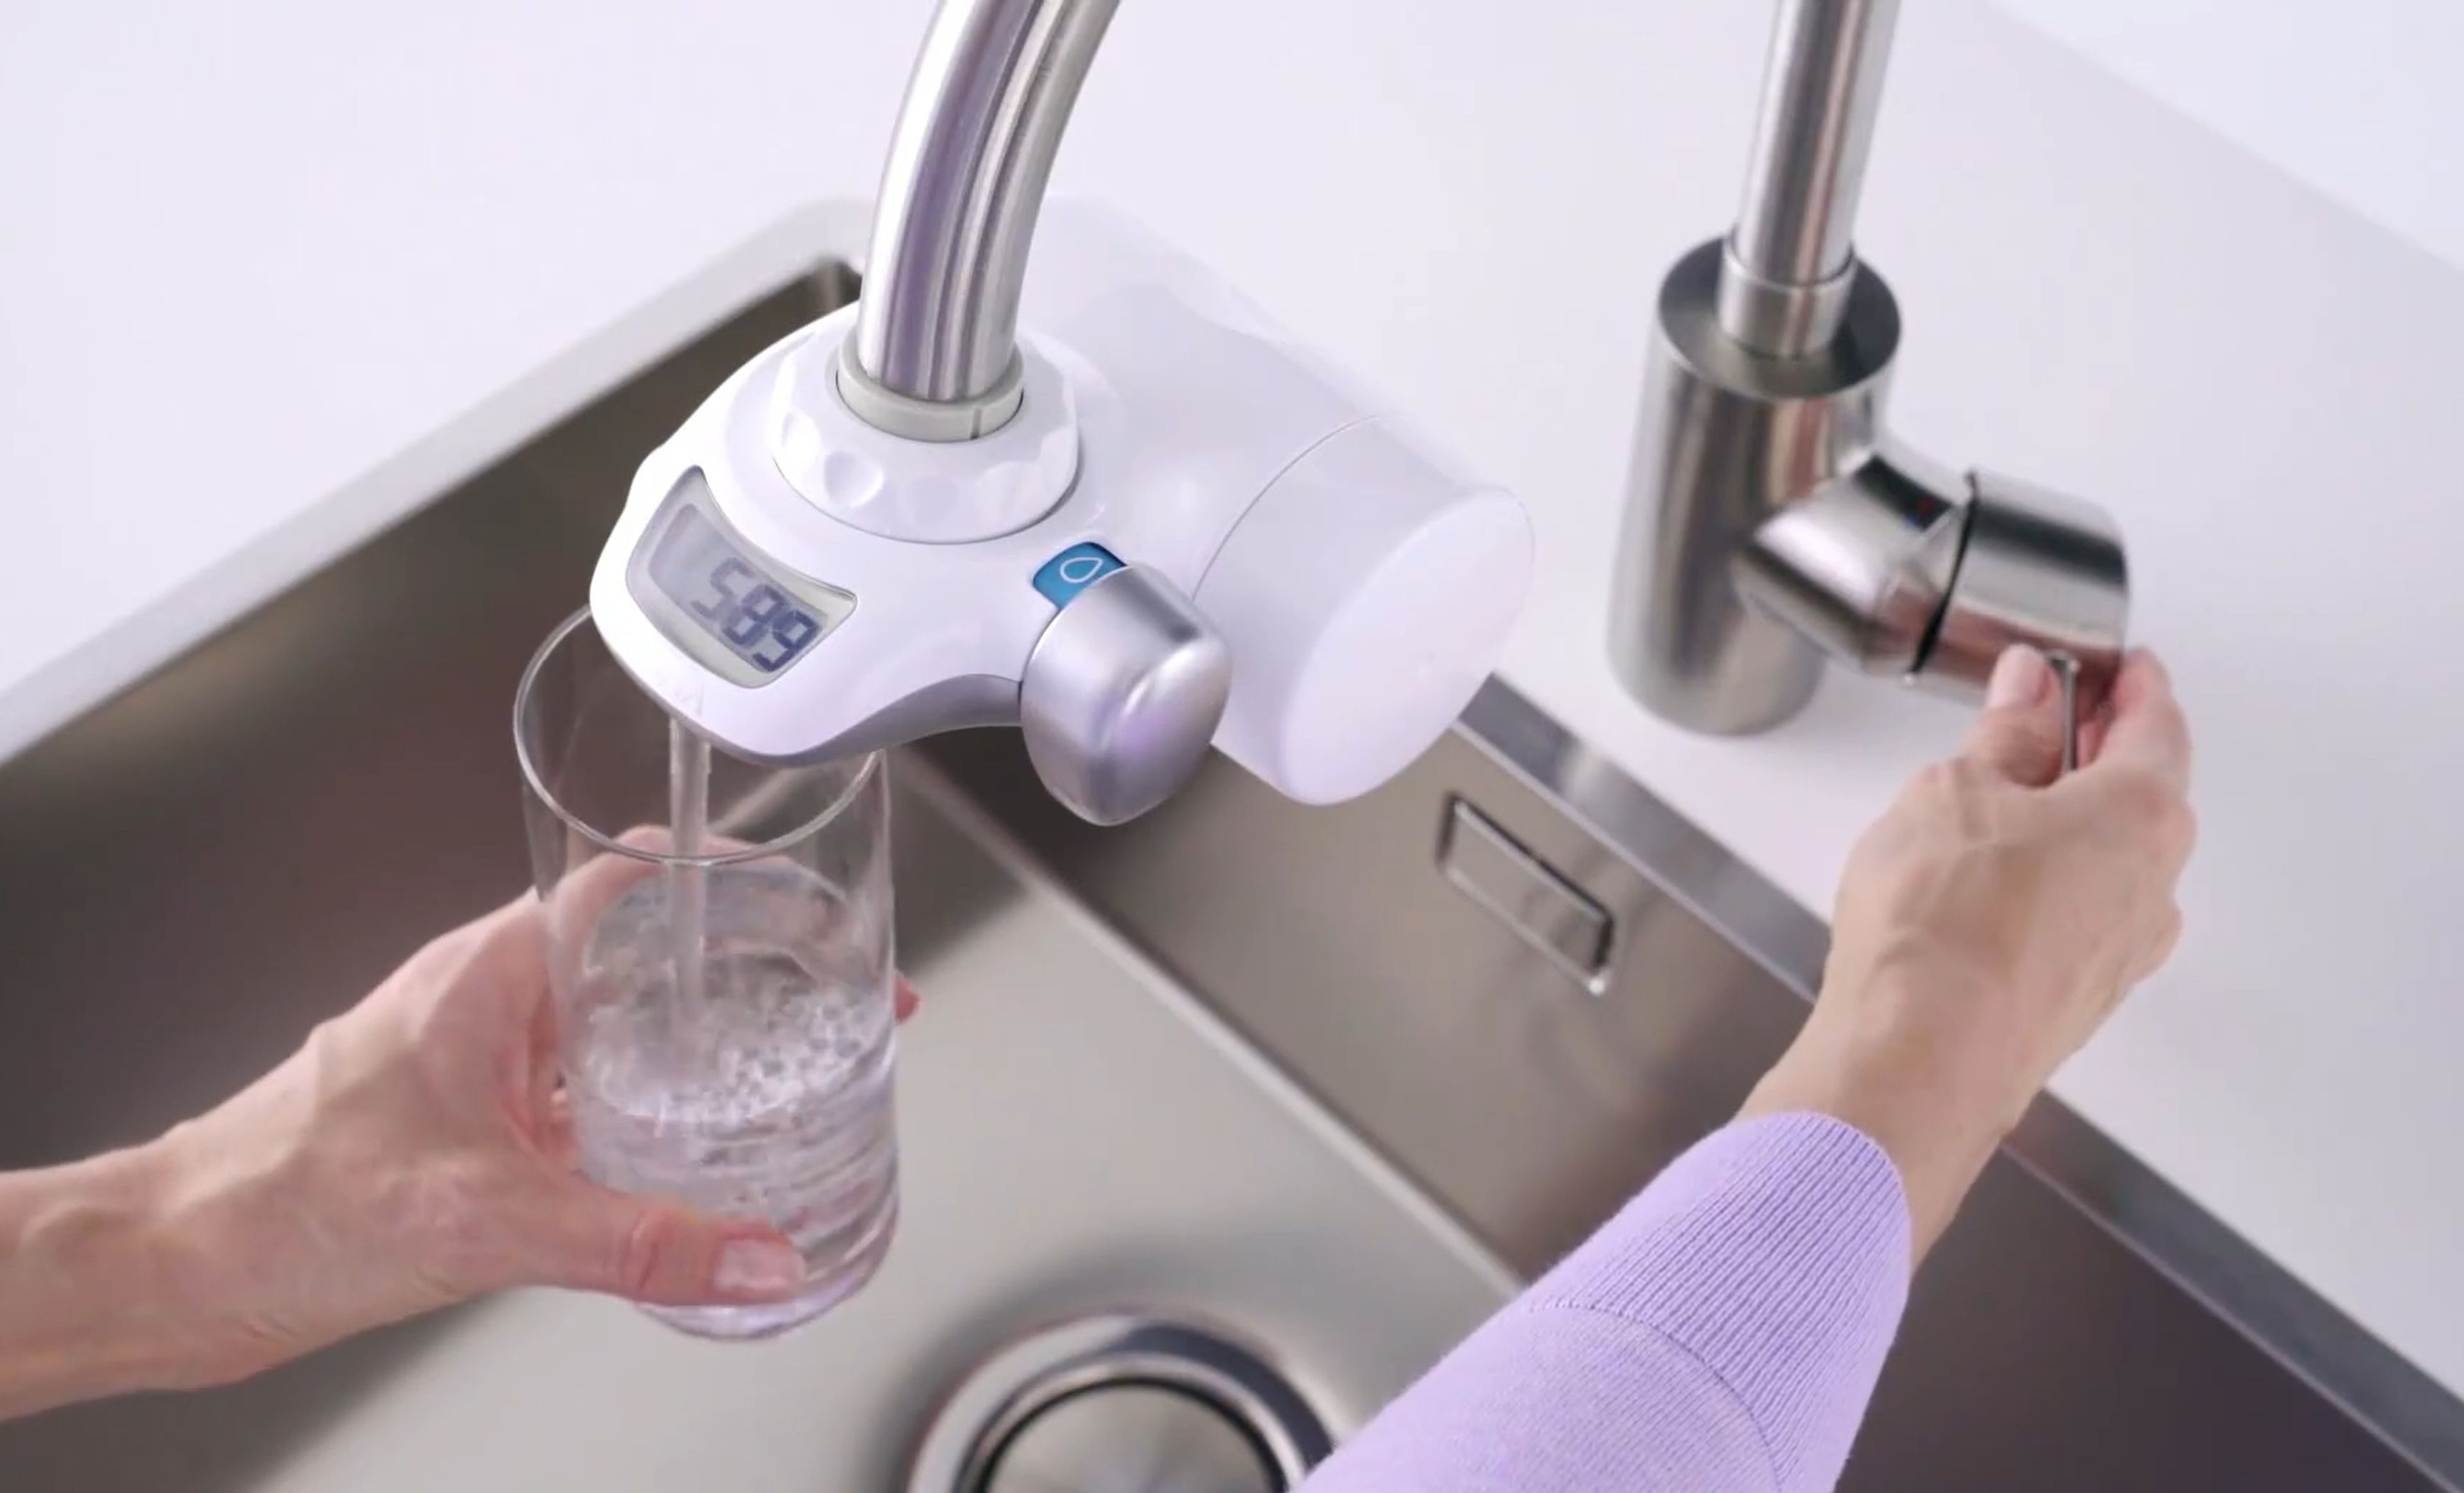 Sistema de filtrado de agua para el grifo de BRITA, la forma más cómoda de  eliminar los microplásticos, metales pesados y el sabor a cloro